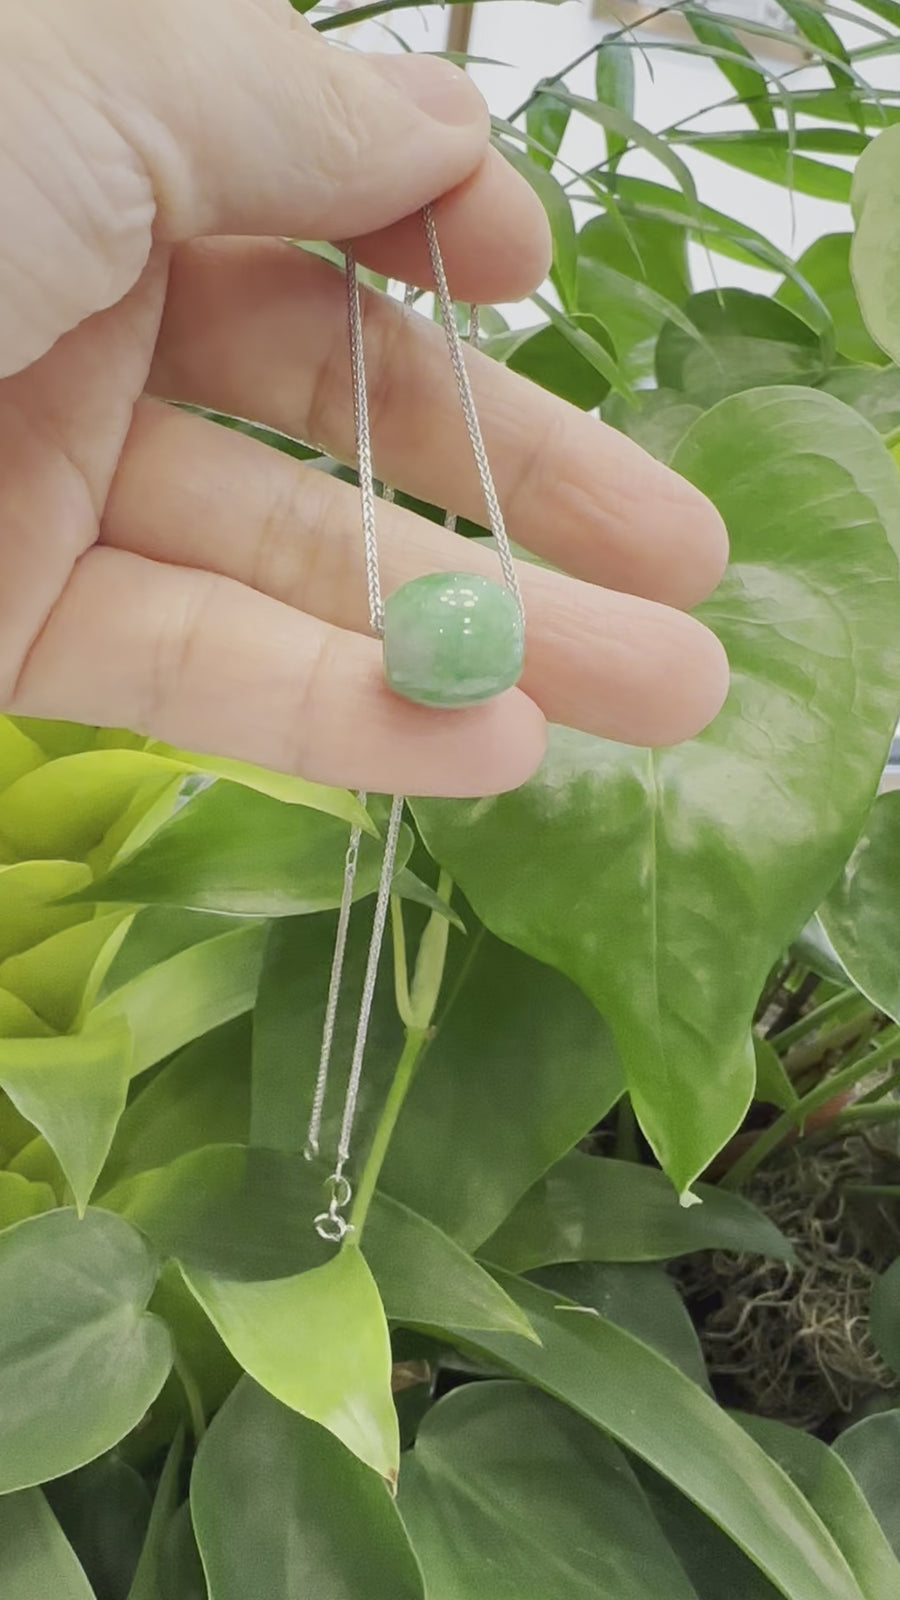 Baikalla™ "Good Luck Button" Necklace Rich Apple Green Jade Lucky TongTong Pendant Necklace